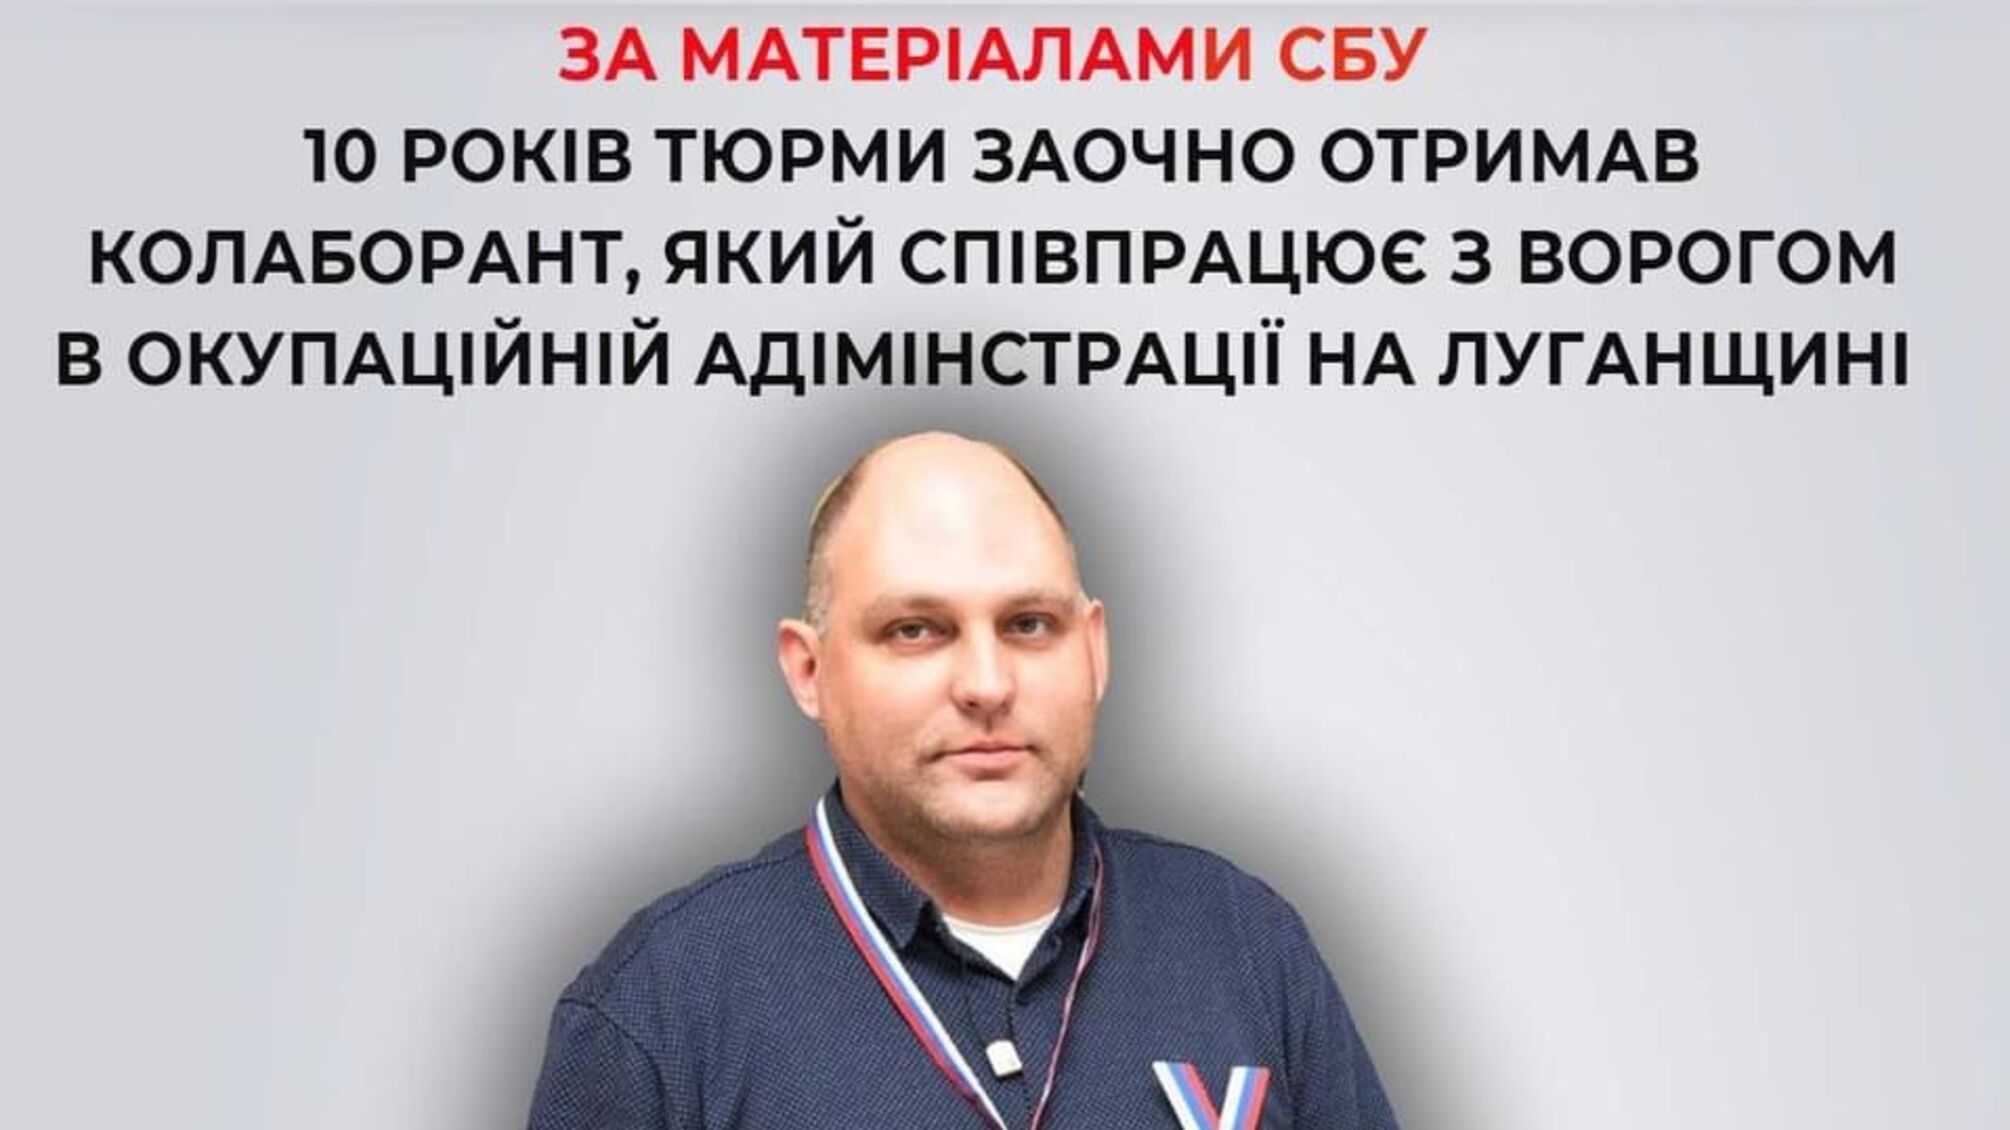  Співпрацював з ворогом в окупаційній адміністрації на Луганщині: 10 років тюрми отримав колаборант 